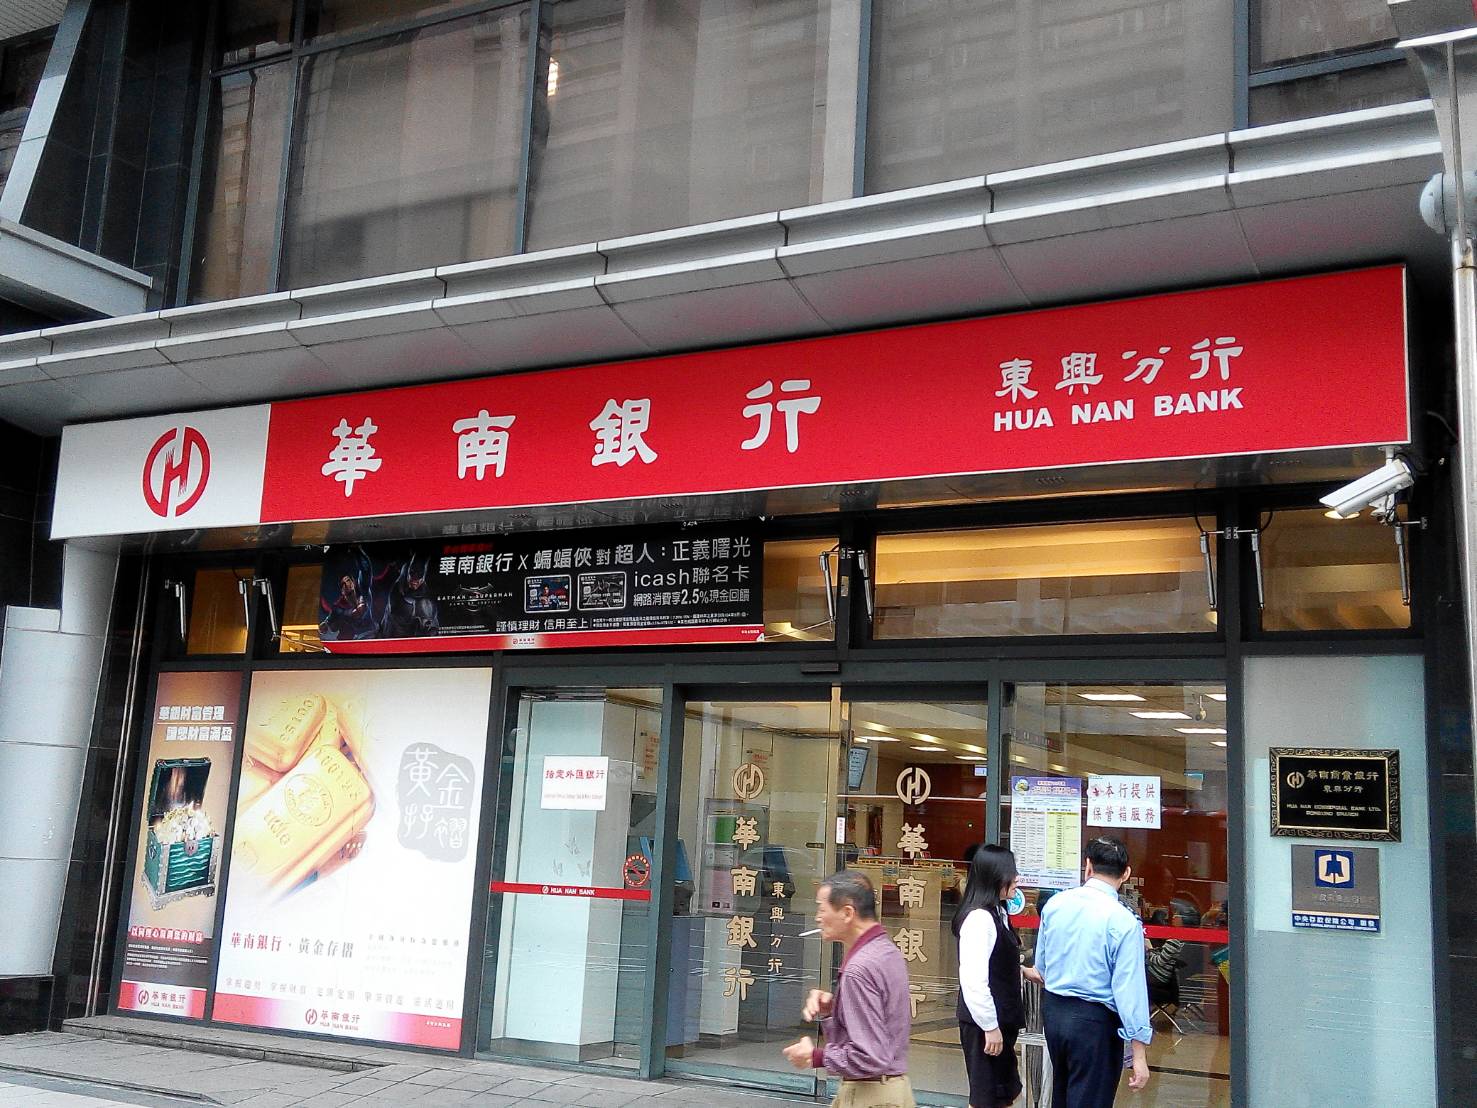 華南銀行擴大招考478人 最高薪可達60K-1111職場新聞